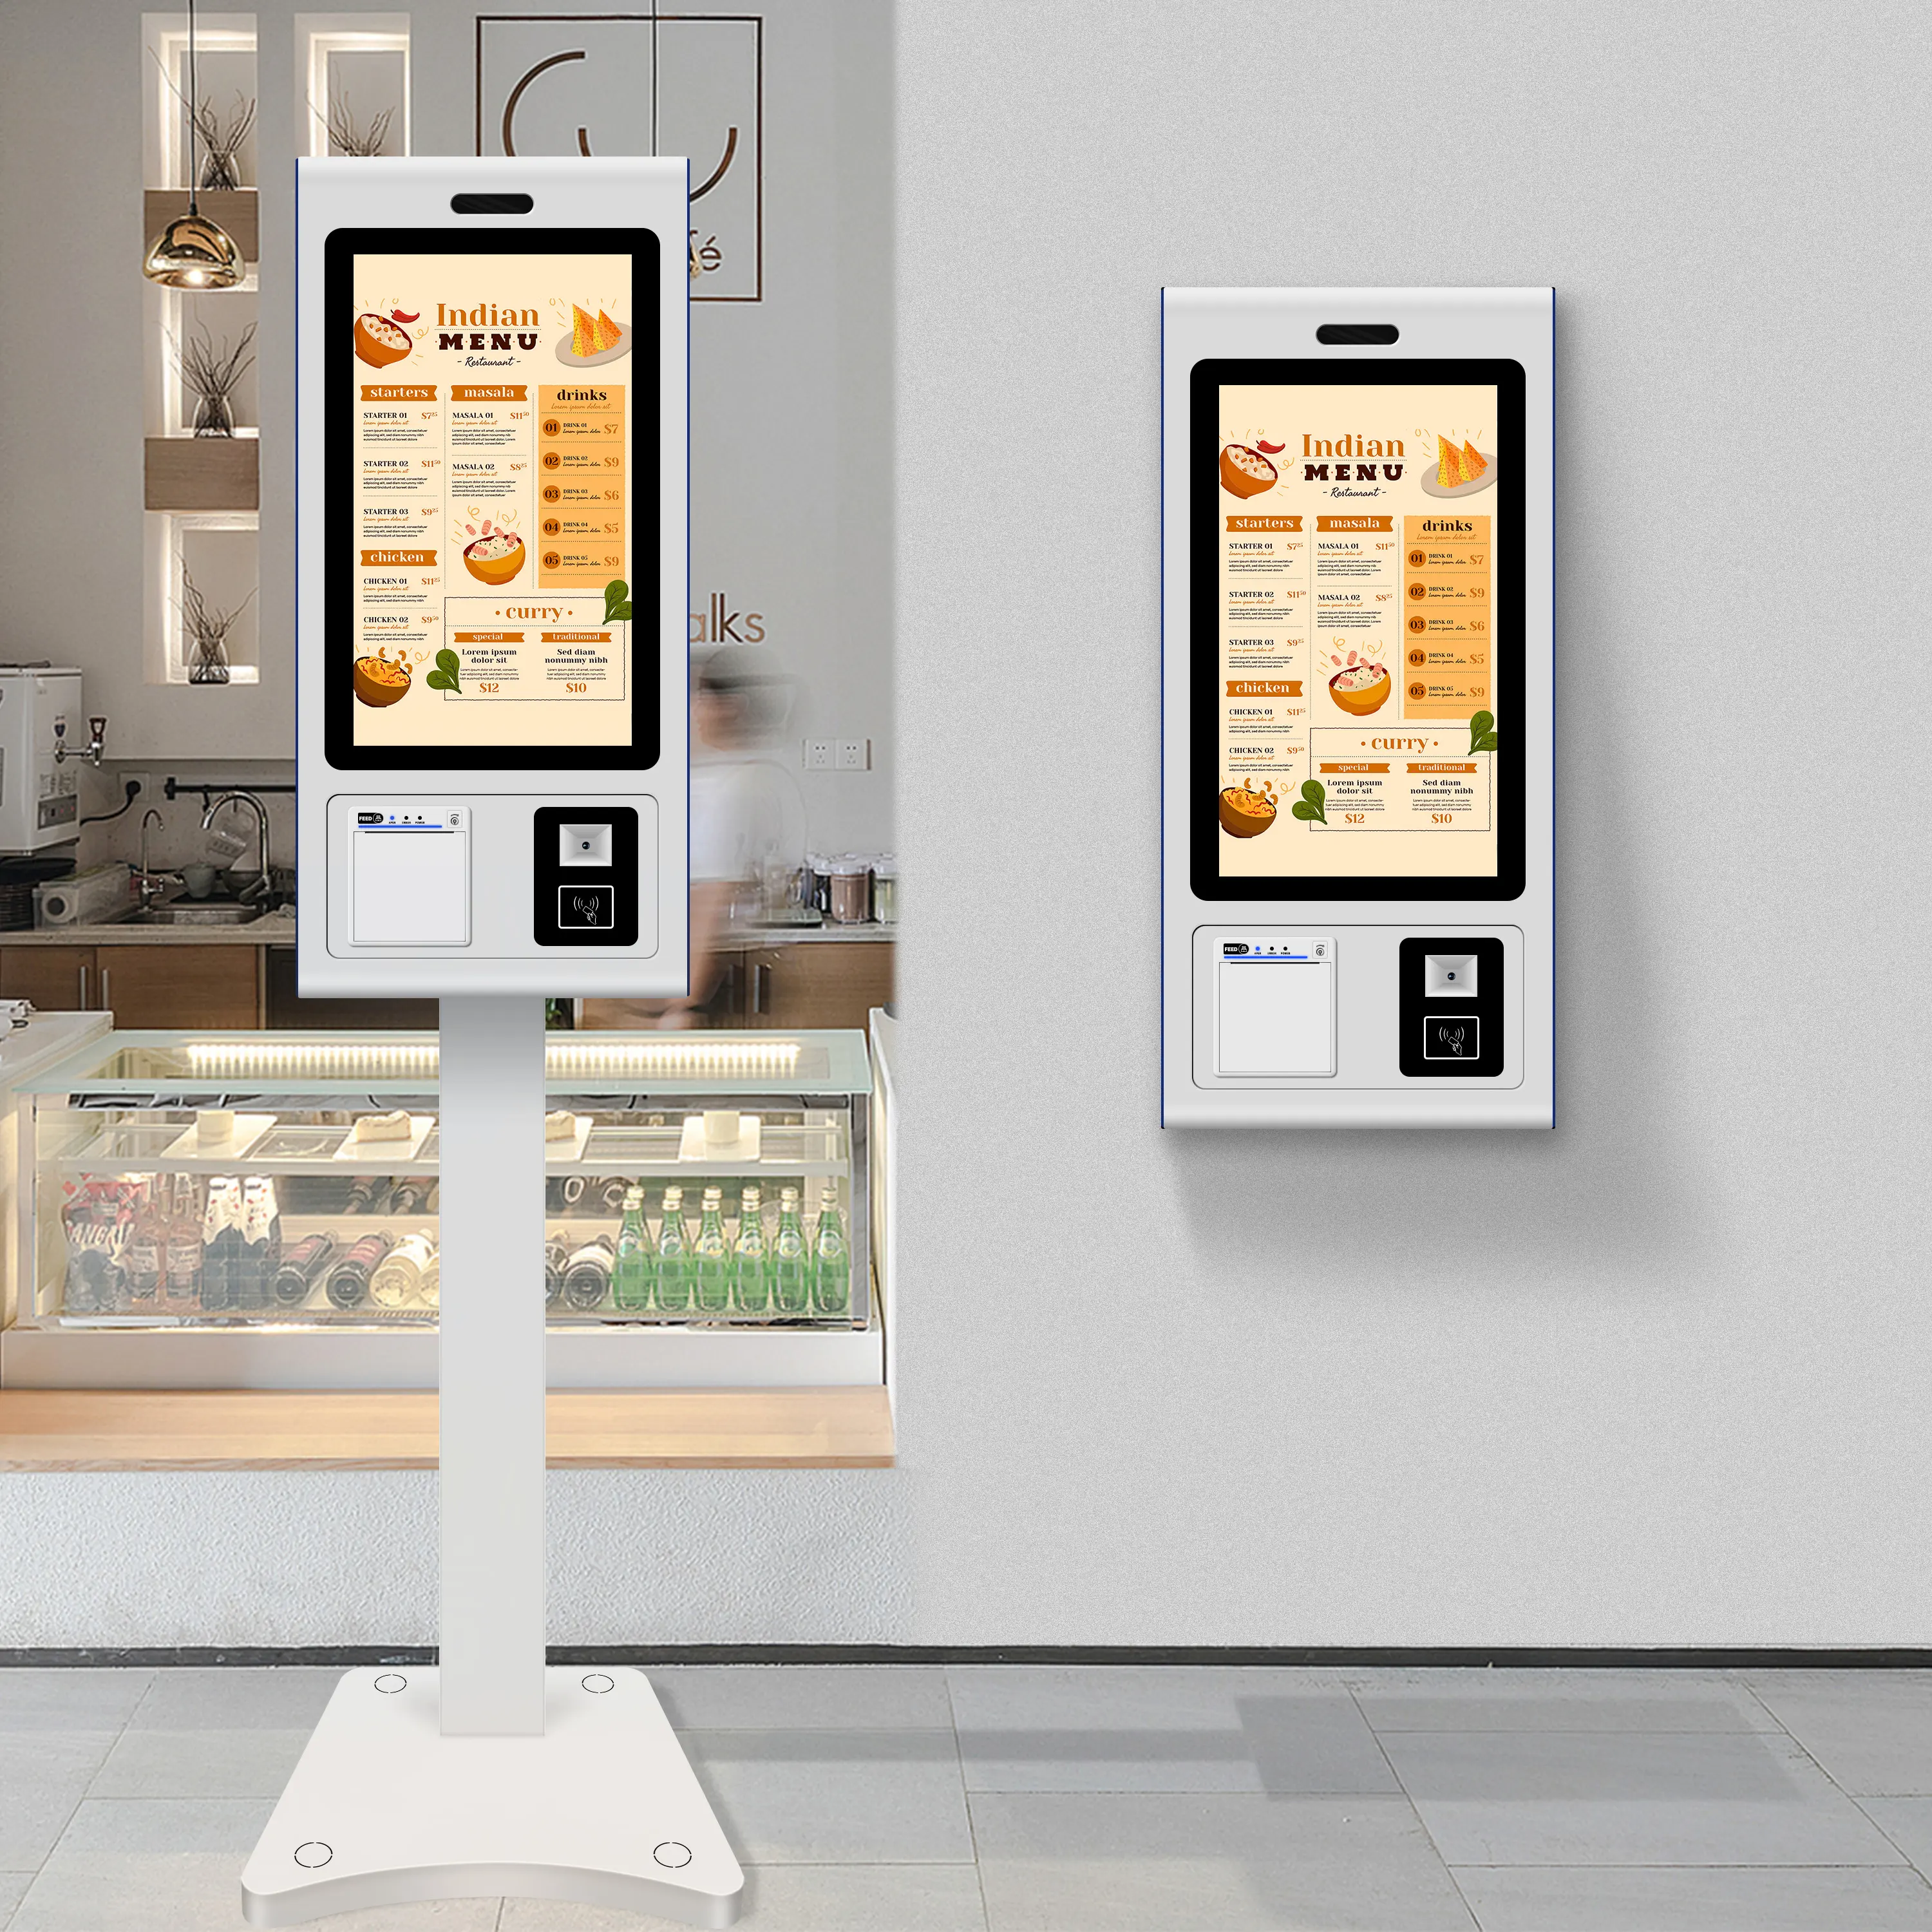 음식 배달 로봇 자체 운전 23.8 인치 안드로이드 시스템 셀프 서비스 금전 등록기 터치 스크린 키오스크 기계 KFC 패스트 푸드